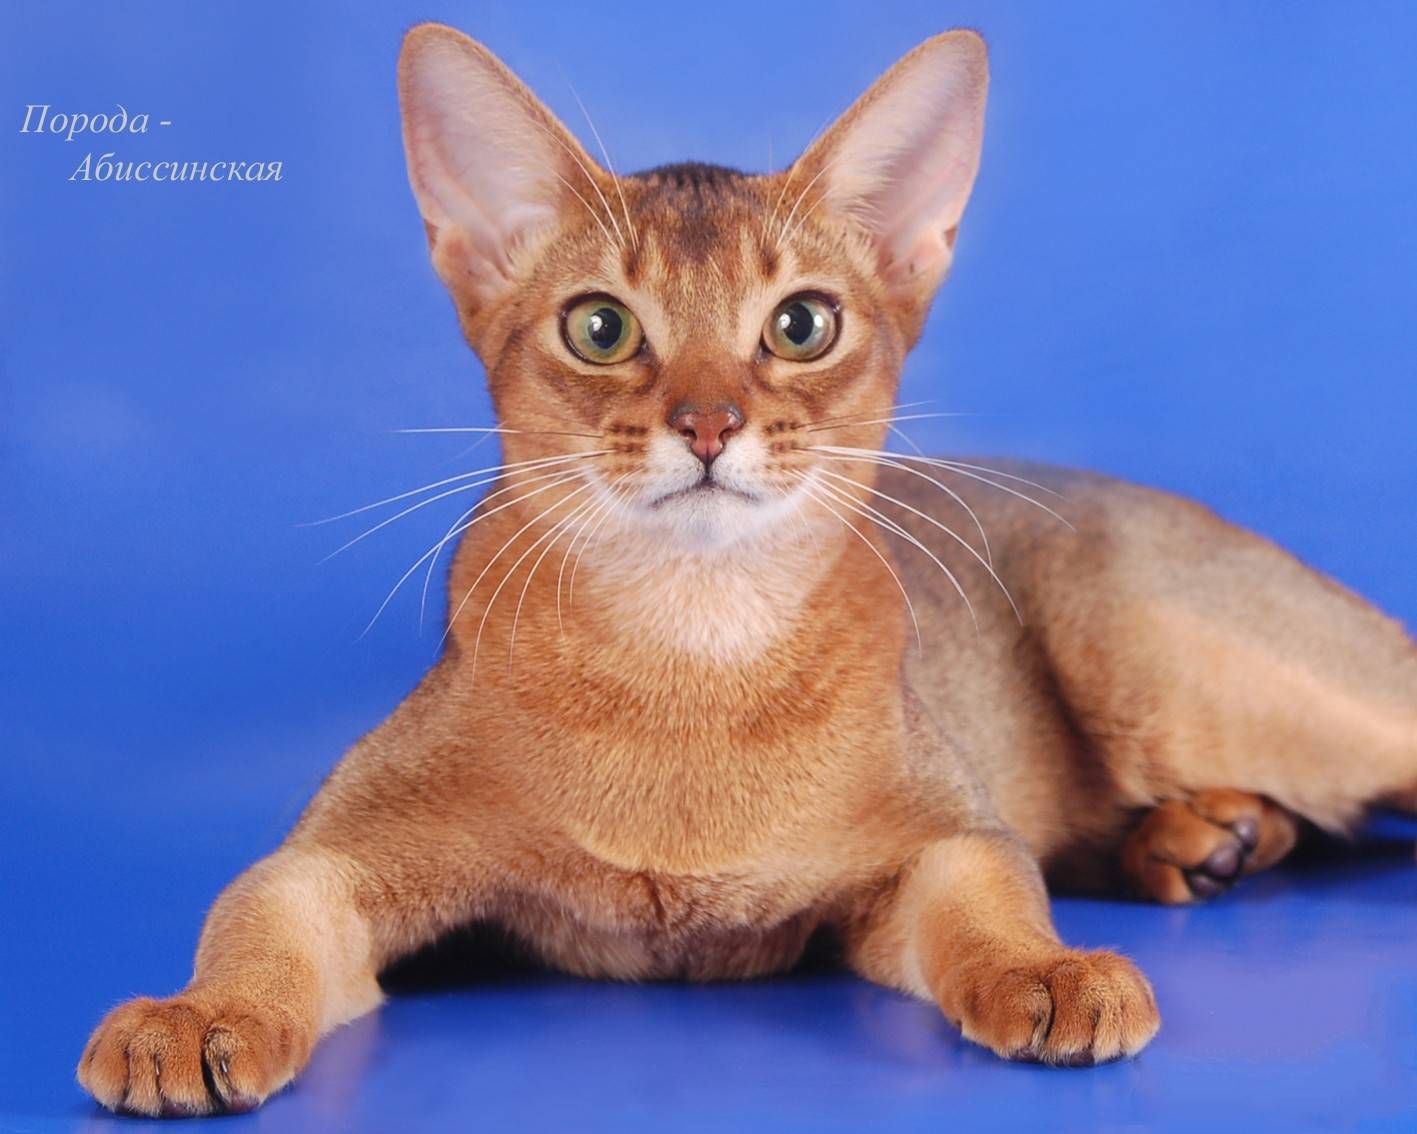 Абиссинская кошка - внешность, характеристики шерсти и окрас, содержание и рацион питания